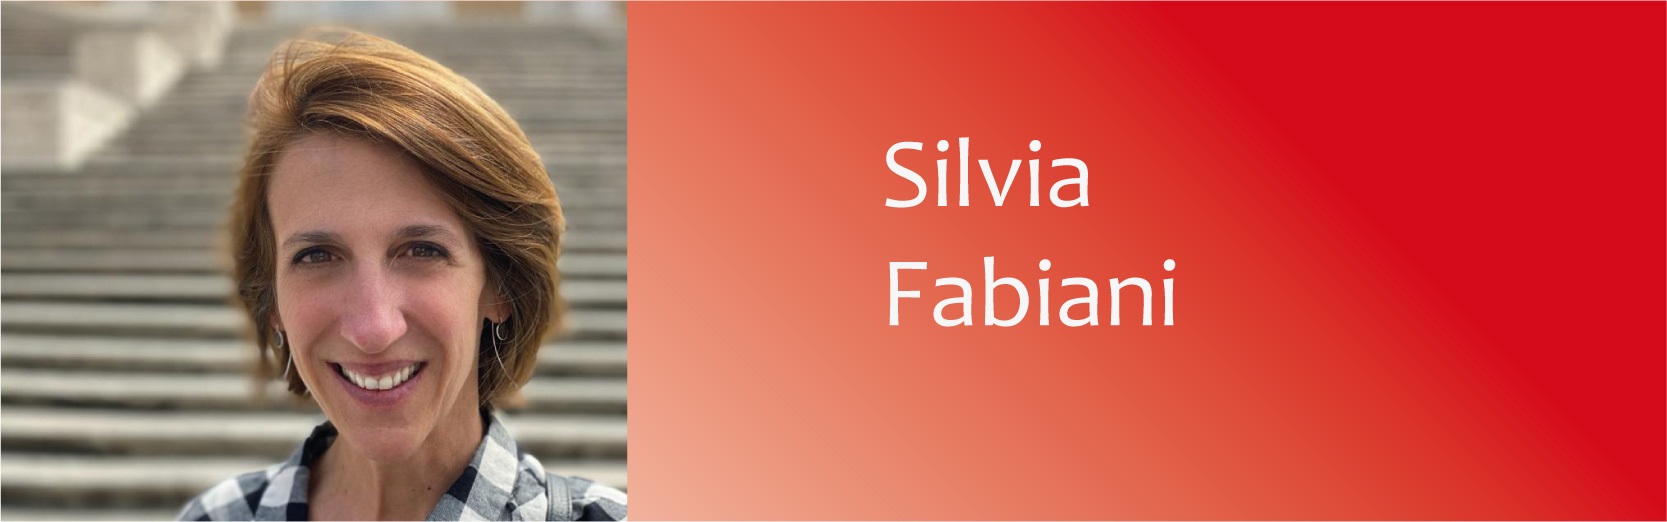 Silvia Fabiani